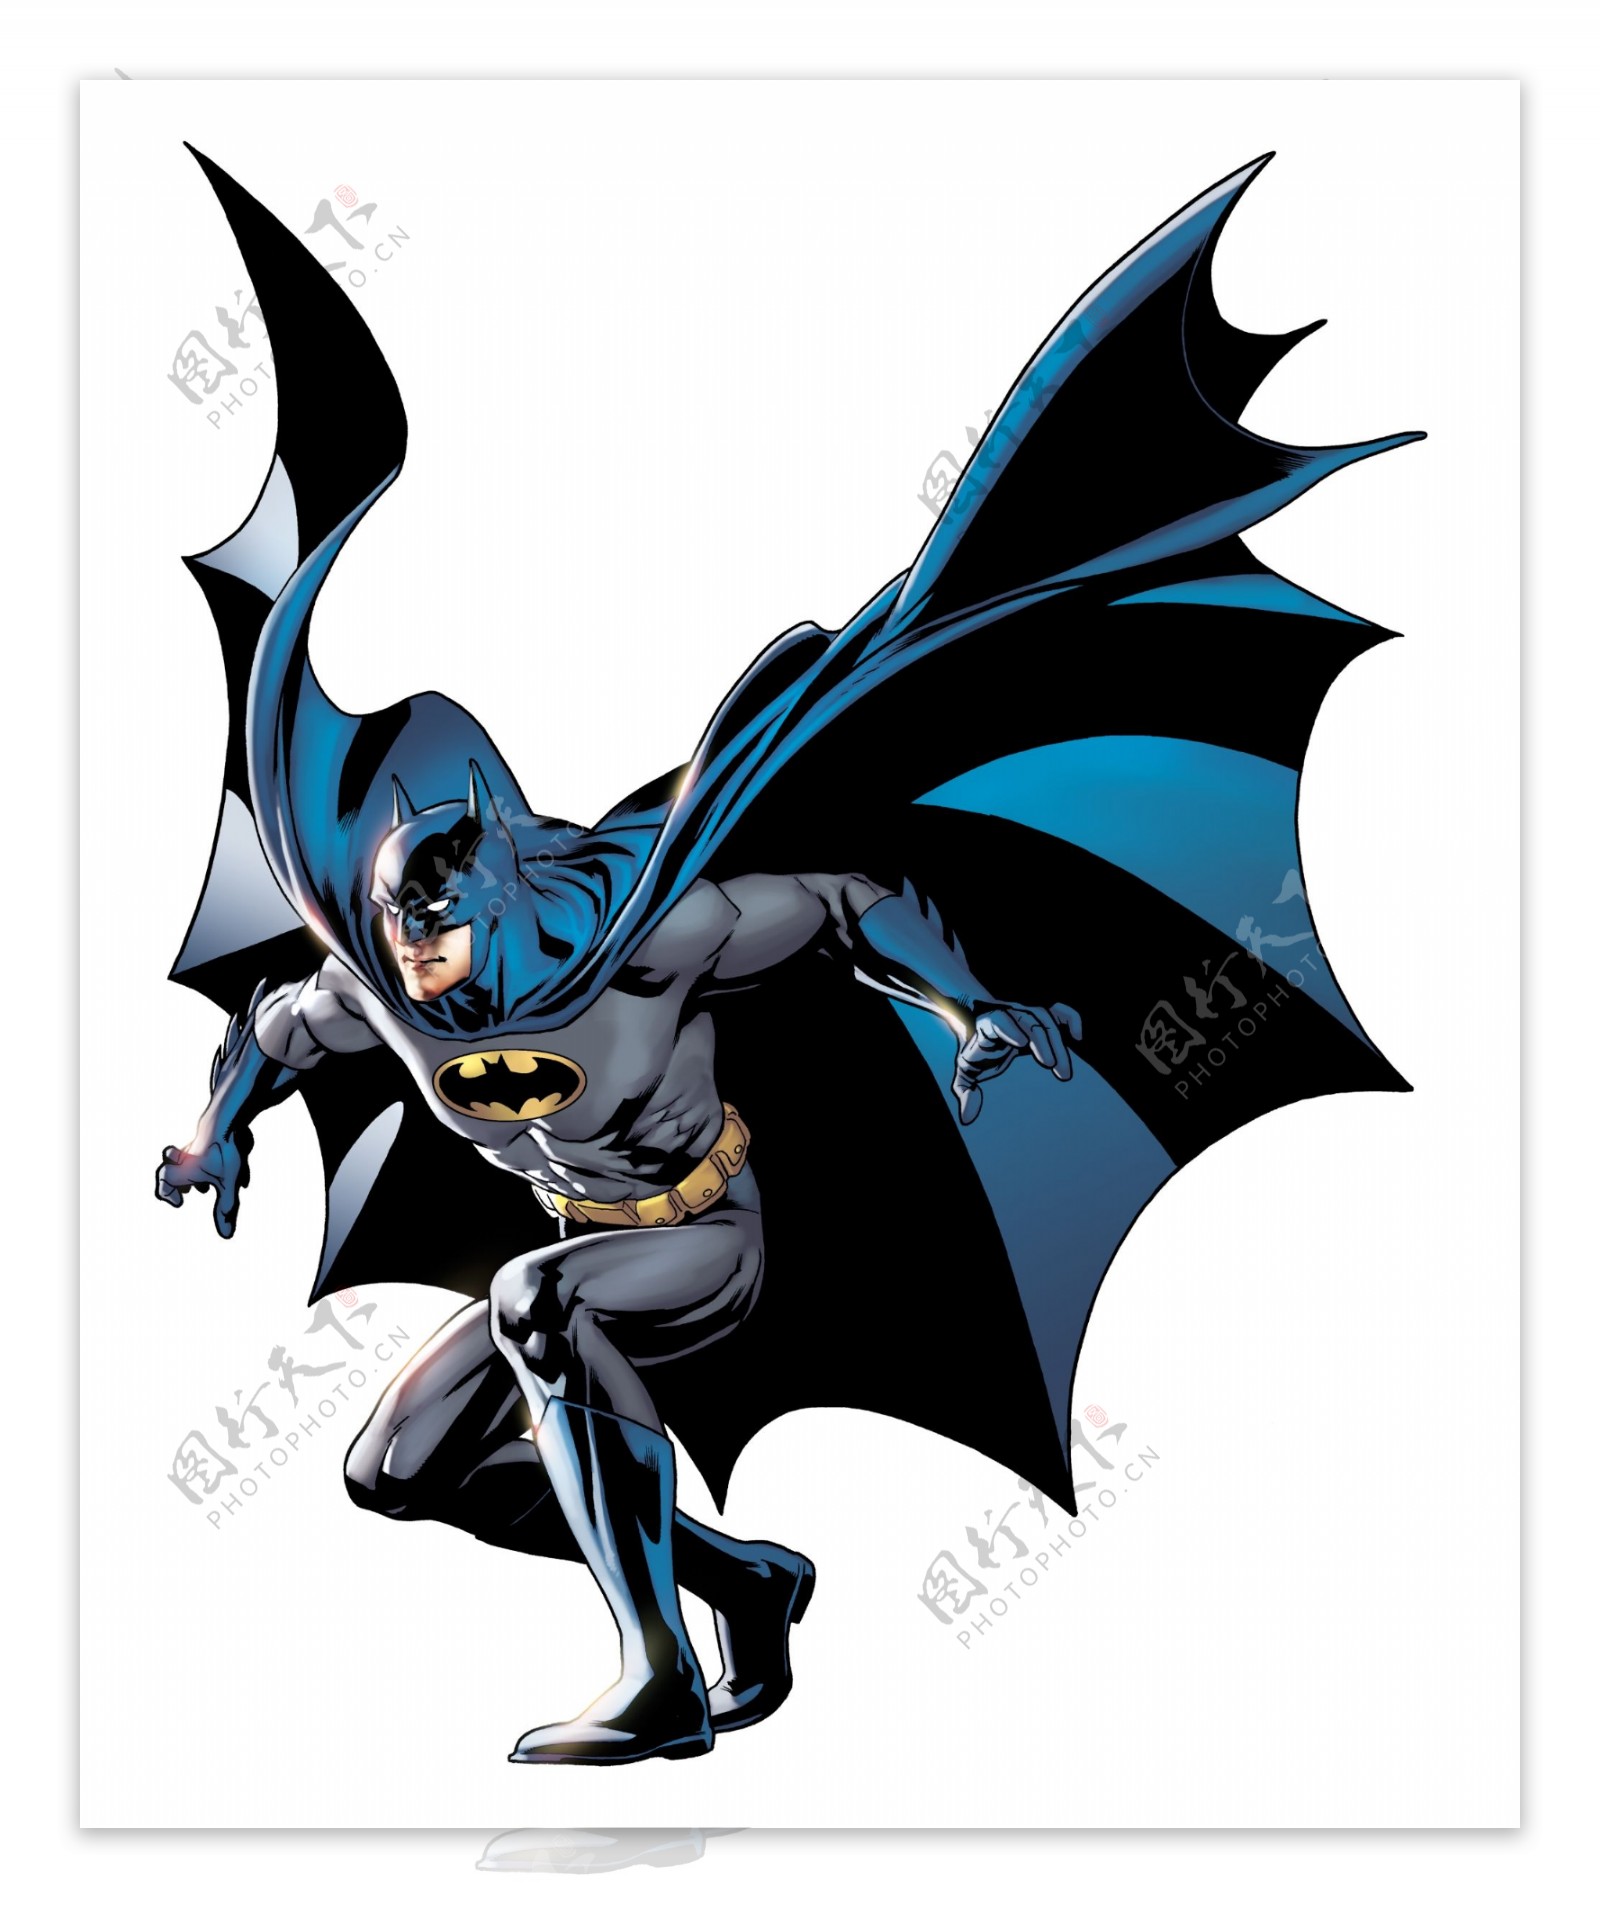 查看完整图片蝙蝠侠 超人 英雄 卡通 高清 设计 动漫动画 动漫人物